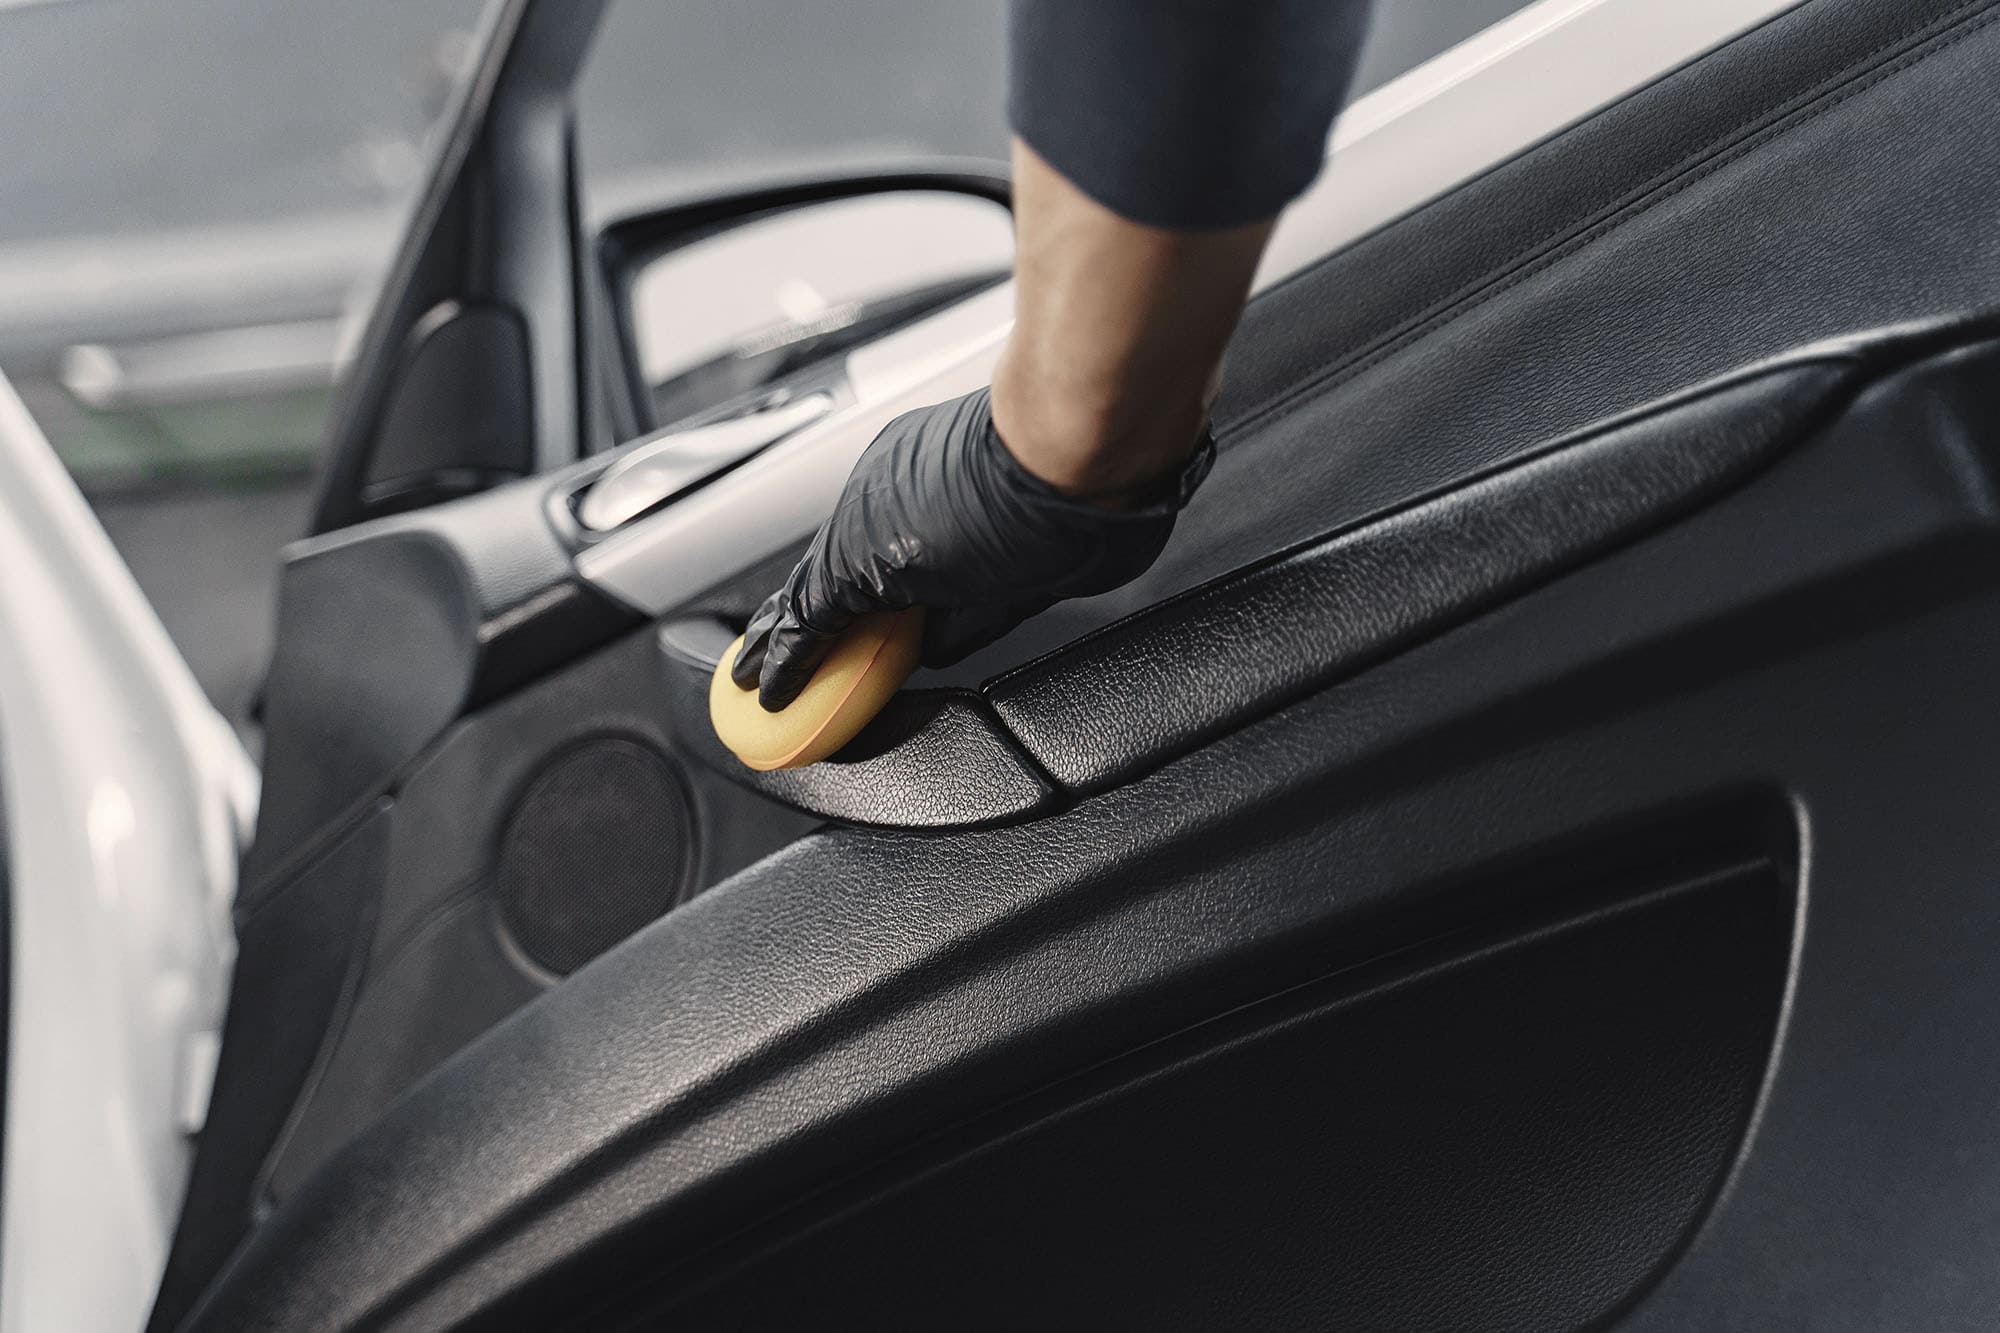 Na zdjęciu widać rękę w rękawiczce, która starannie czyści wnętrze drzwi samochodu za pomocą ściereczki. Mycie ręczne Dzierżoniów dostępne w Kasprowicz Auto.